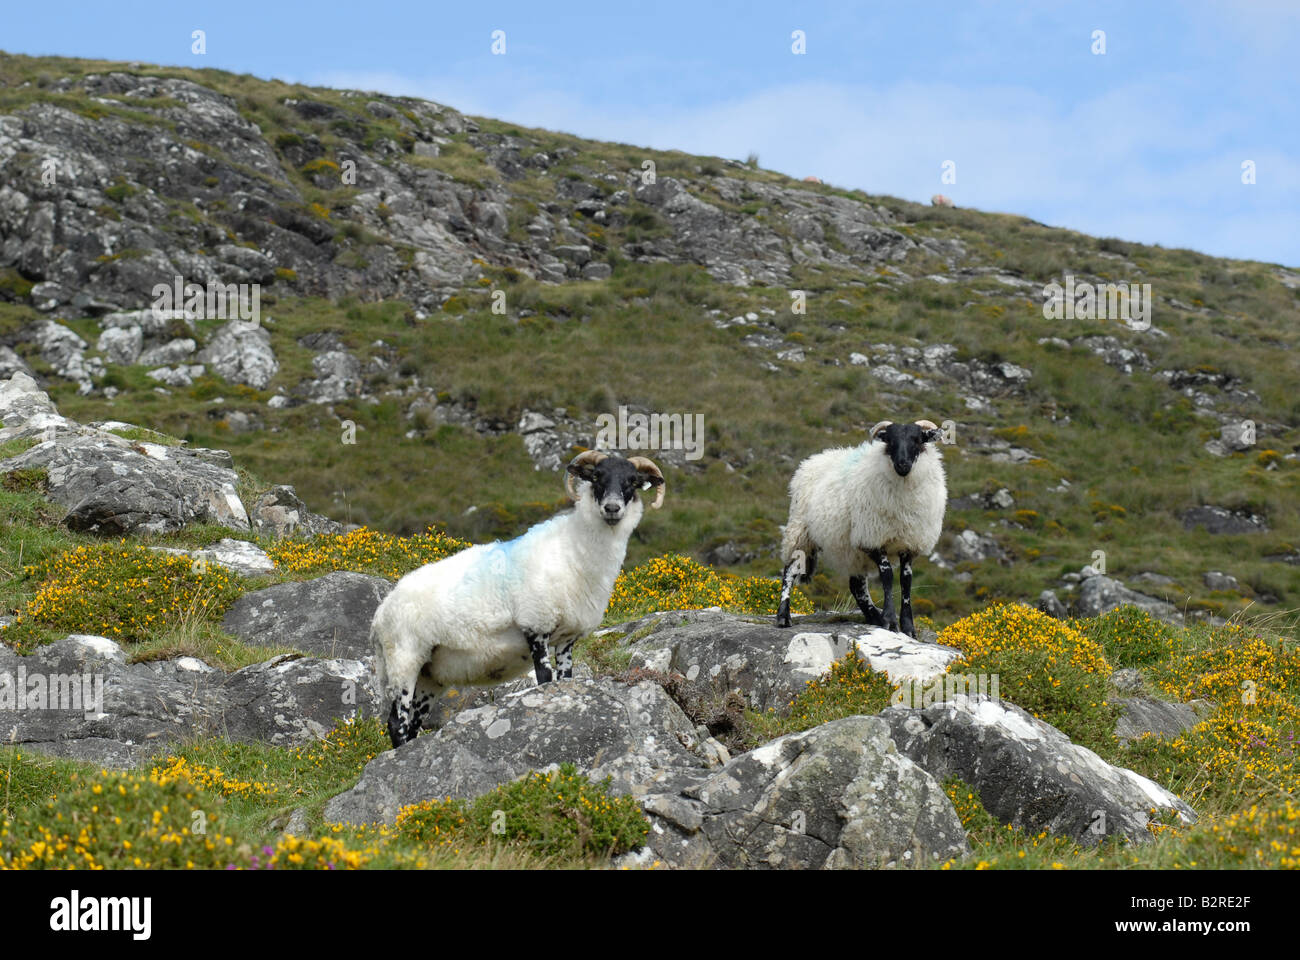 Sheep on rocks Roundstone, Ireland Stock Photo